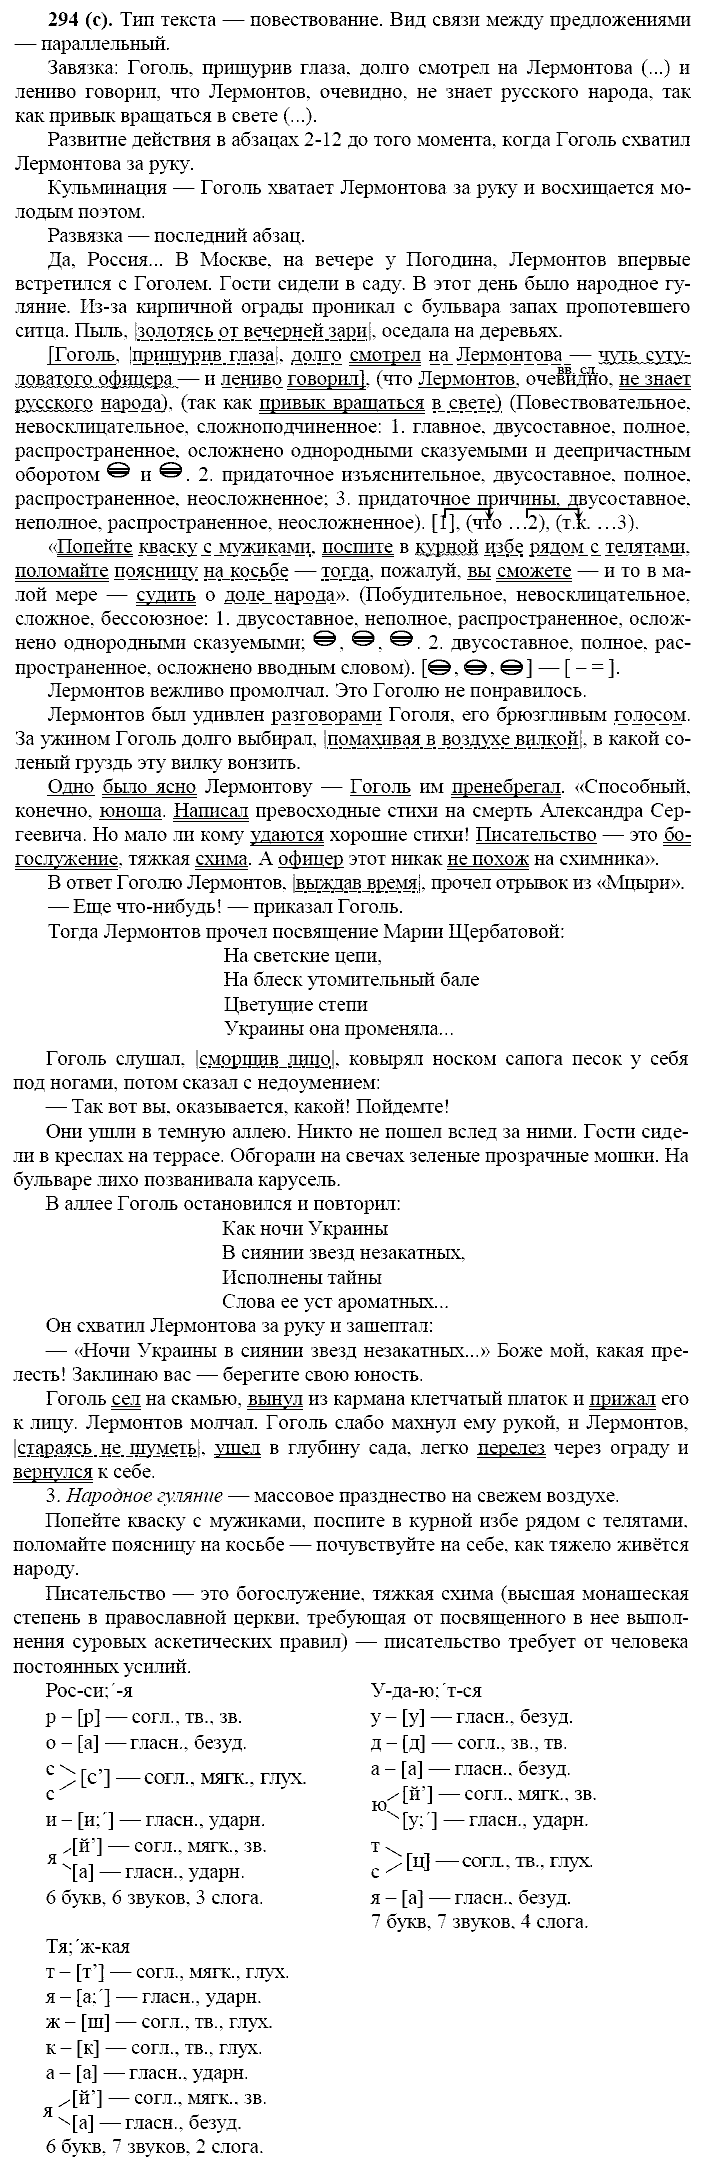 Русский язык, 11 класс, Власенков, Рыбченков, 2009-2014, задание: 294 (с)